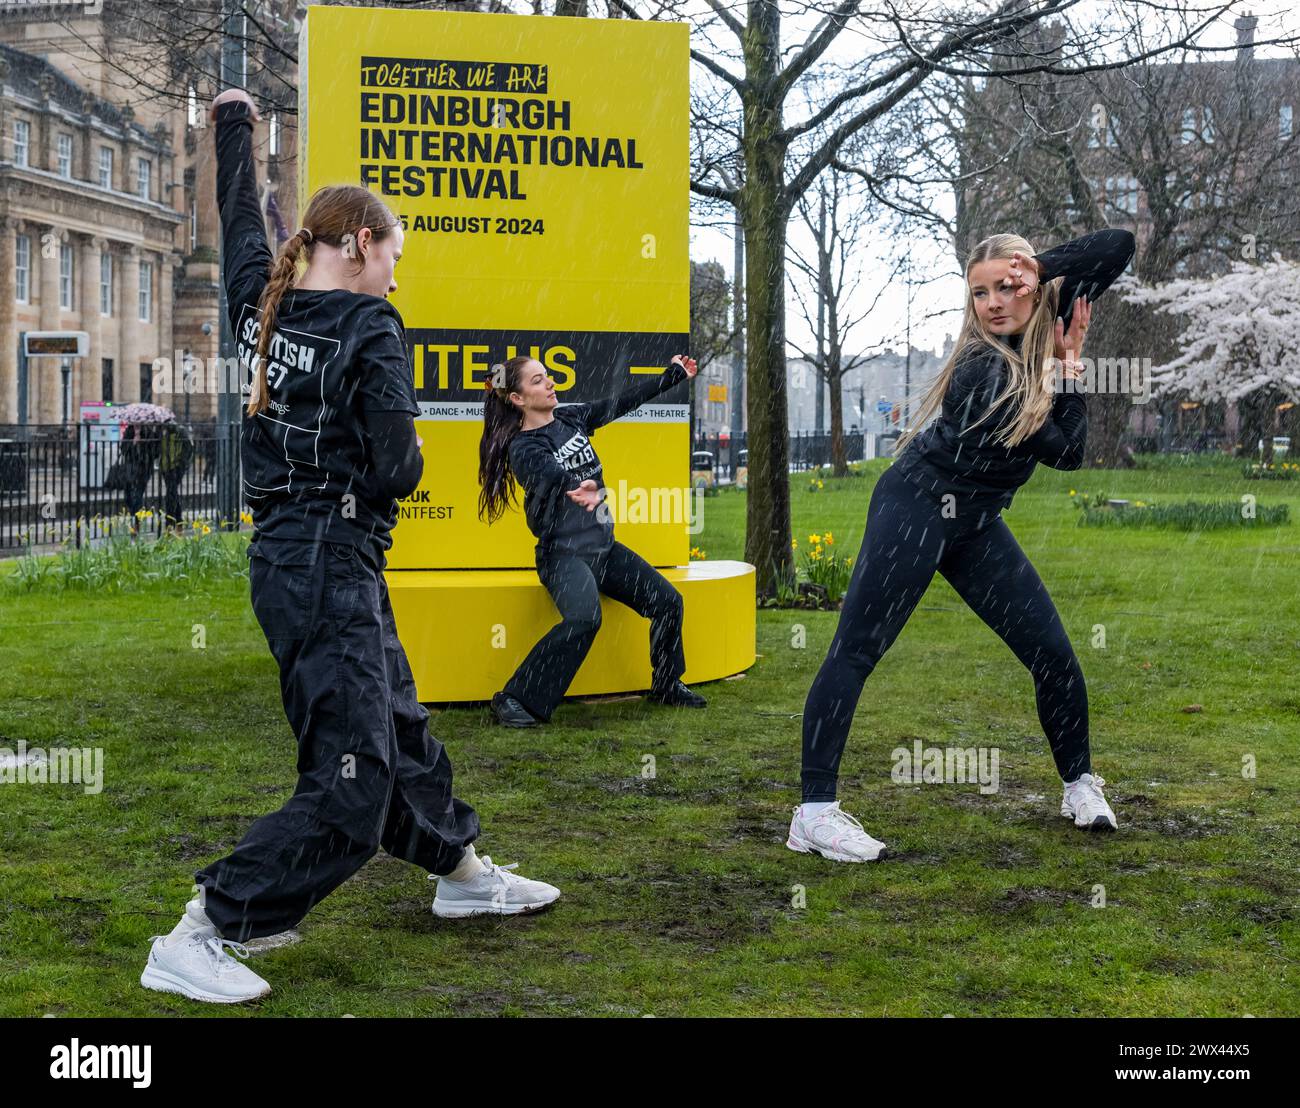 Junge Tänzer des Scottish Ballet Youth Exchange Dancing in Rain, um das Edinburgh International Festival am St Andrew Square in Edinburgh, Schottland, Großbritannien zu eröffnen Stockfoto